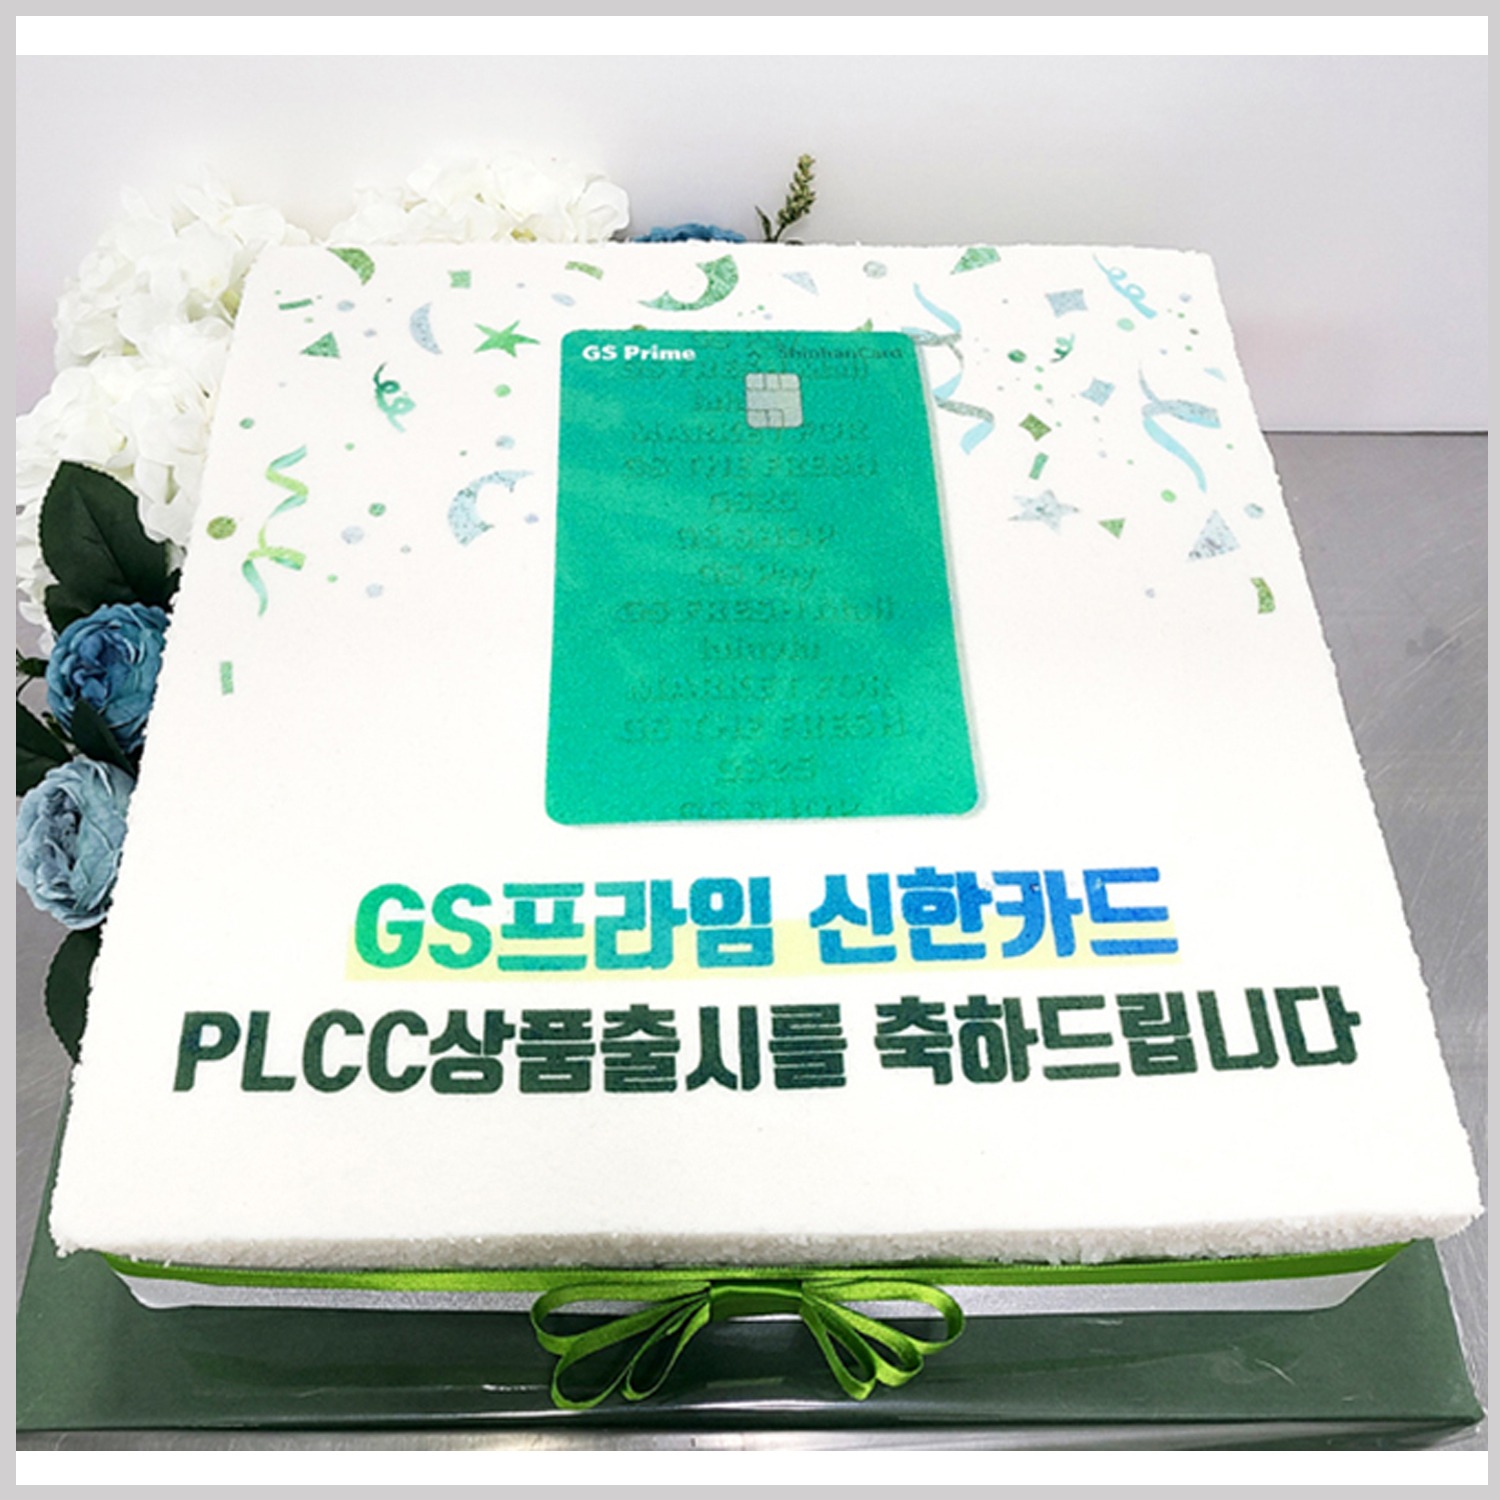 신한카드 상품출시 기념 제작 케이크